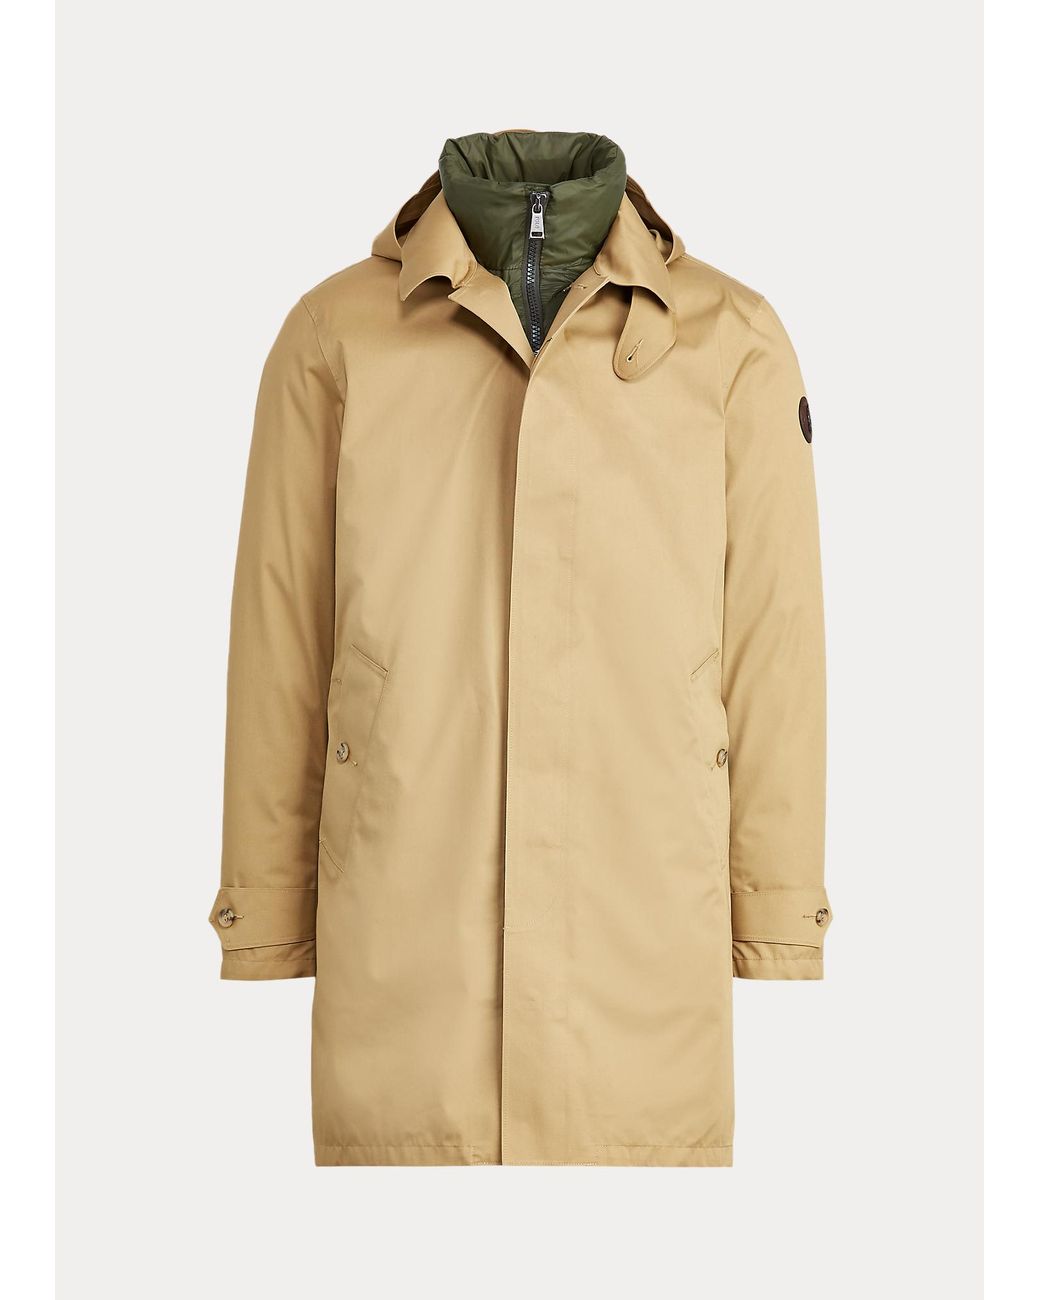 Polo Ralph Lauren 3-in-1 Coat in Natural for Men | Lyst UK